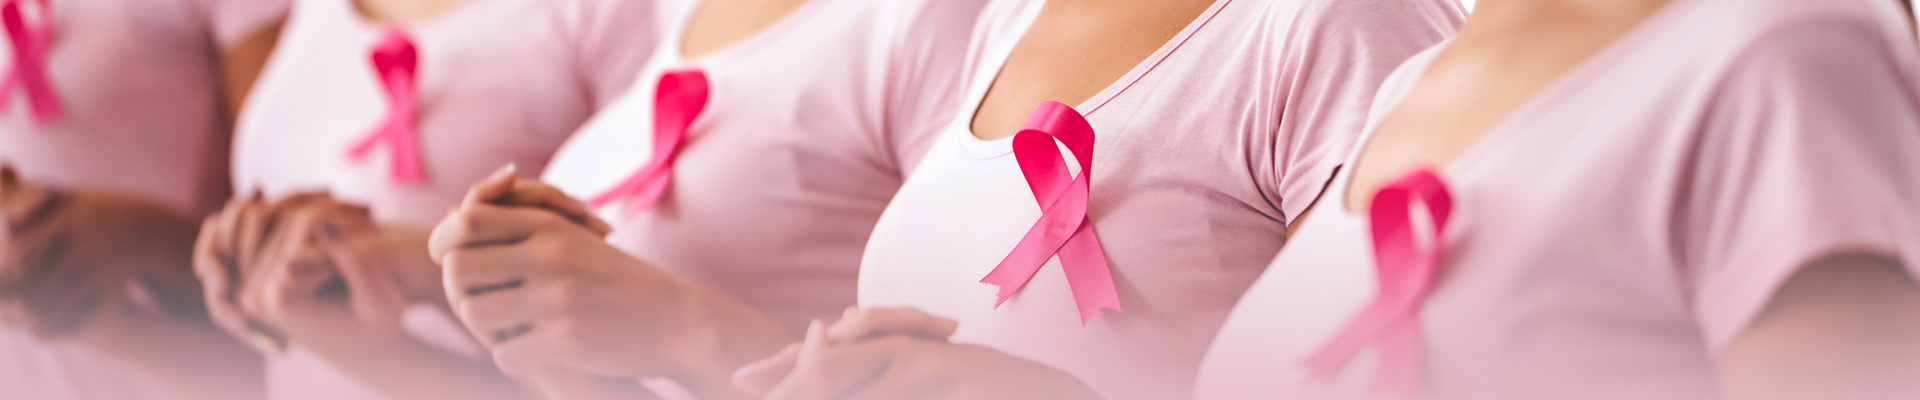 La detección tardía afecta el pronóstico del paciente: cuál es la situación del cáncer de mama en México y el mundo